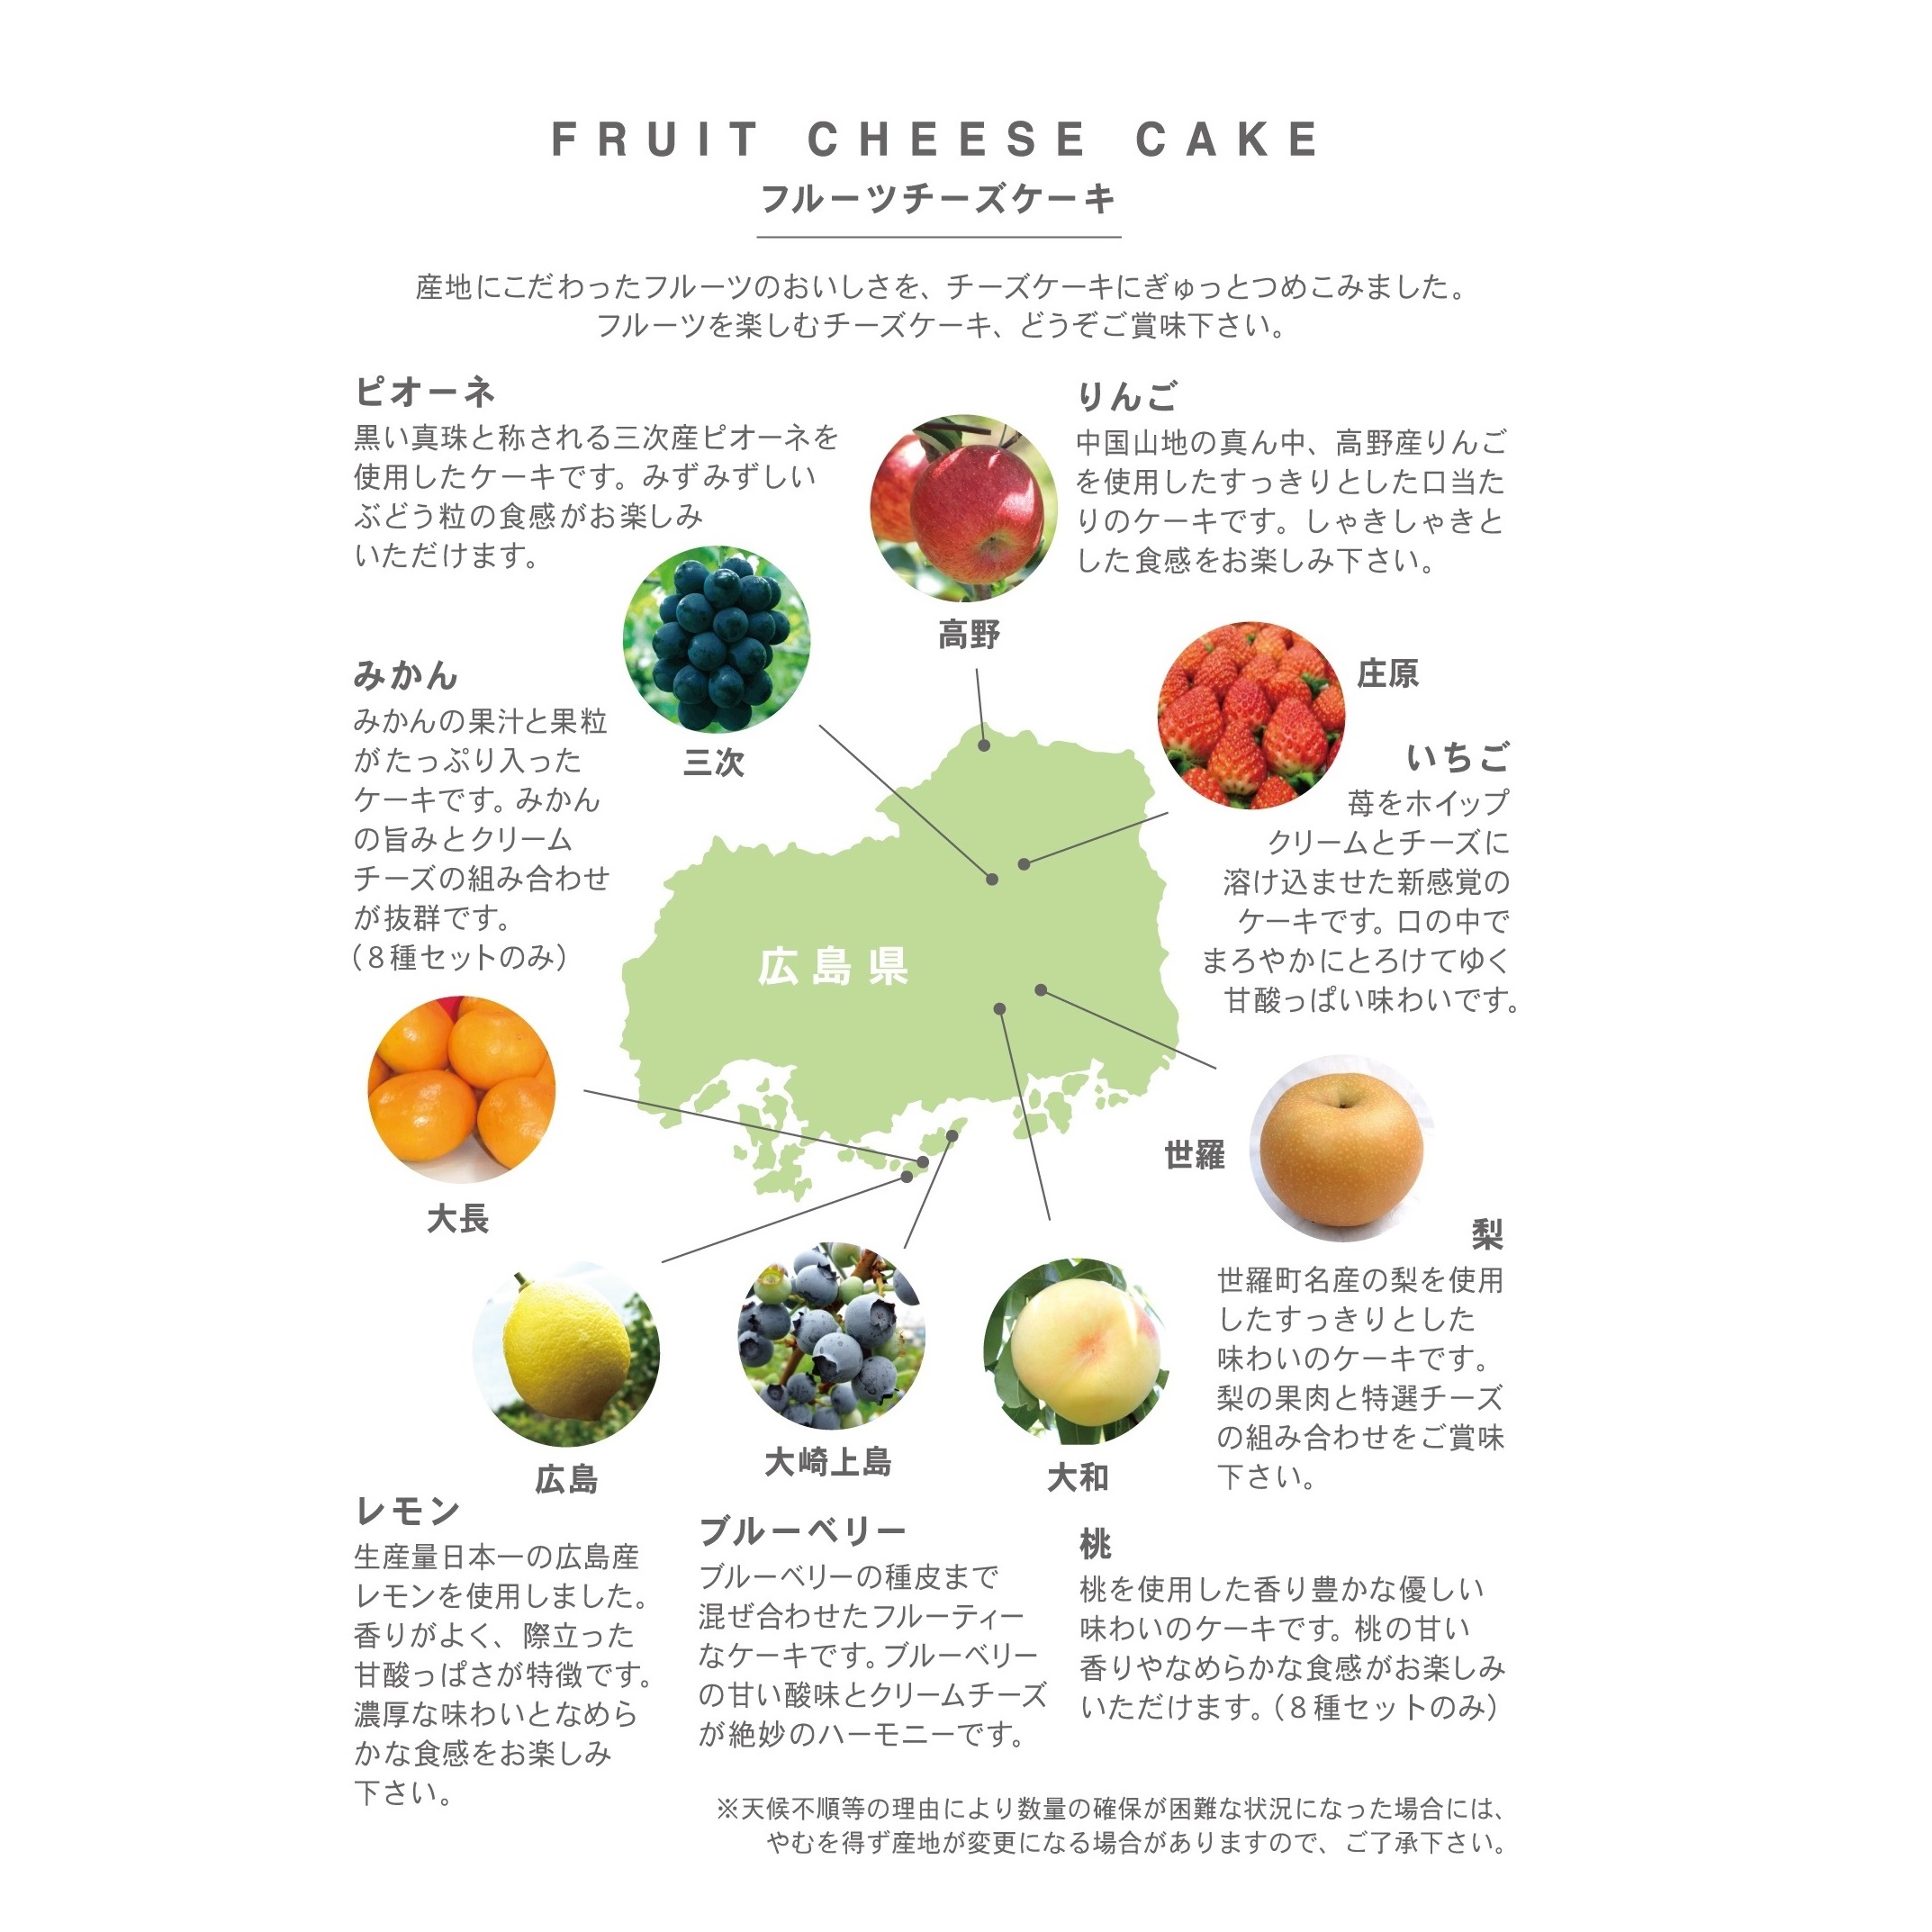 広島の特産フルーツを使用しています。